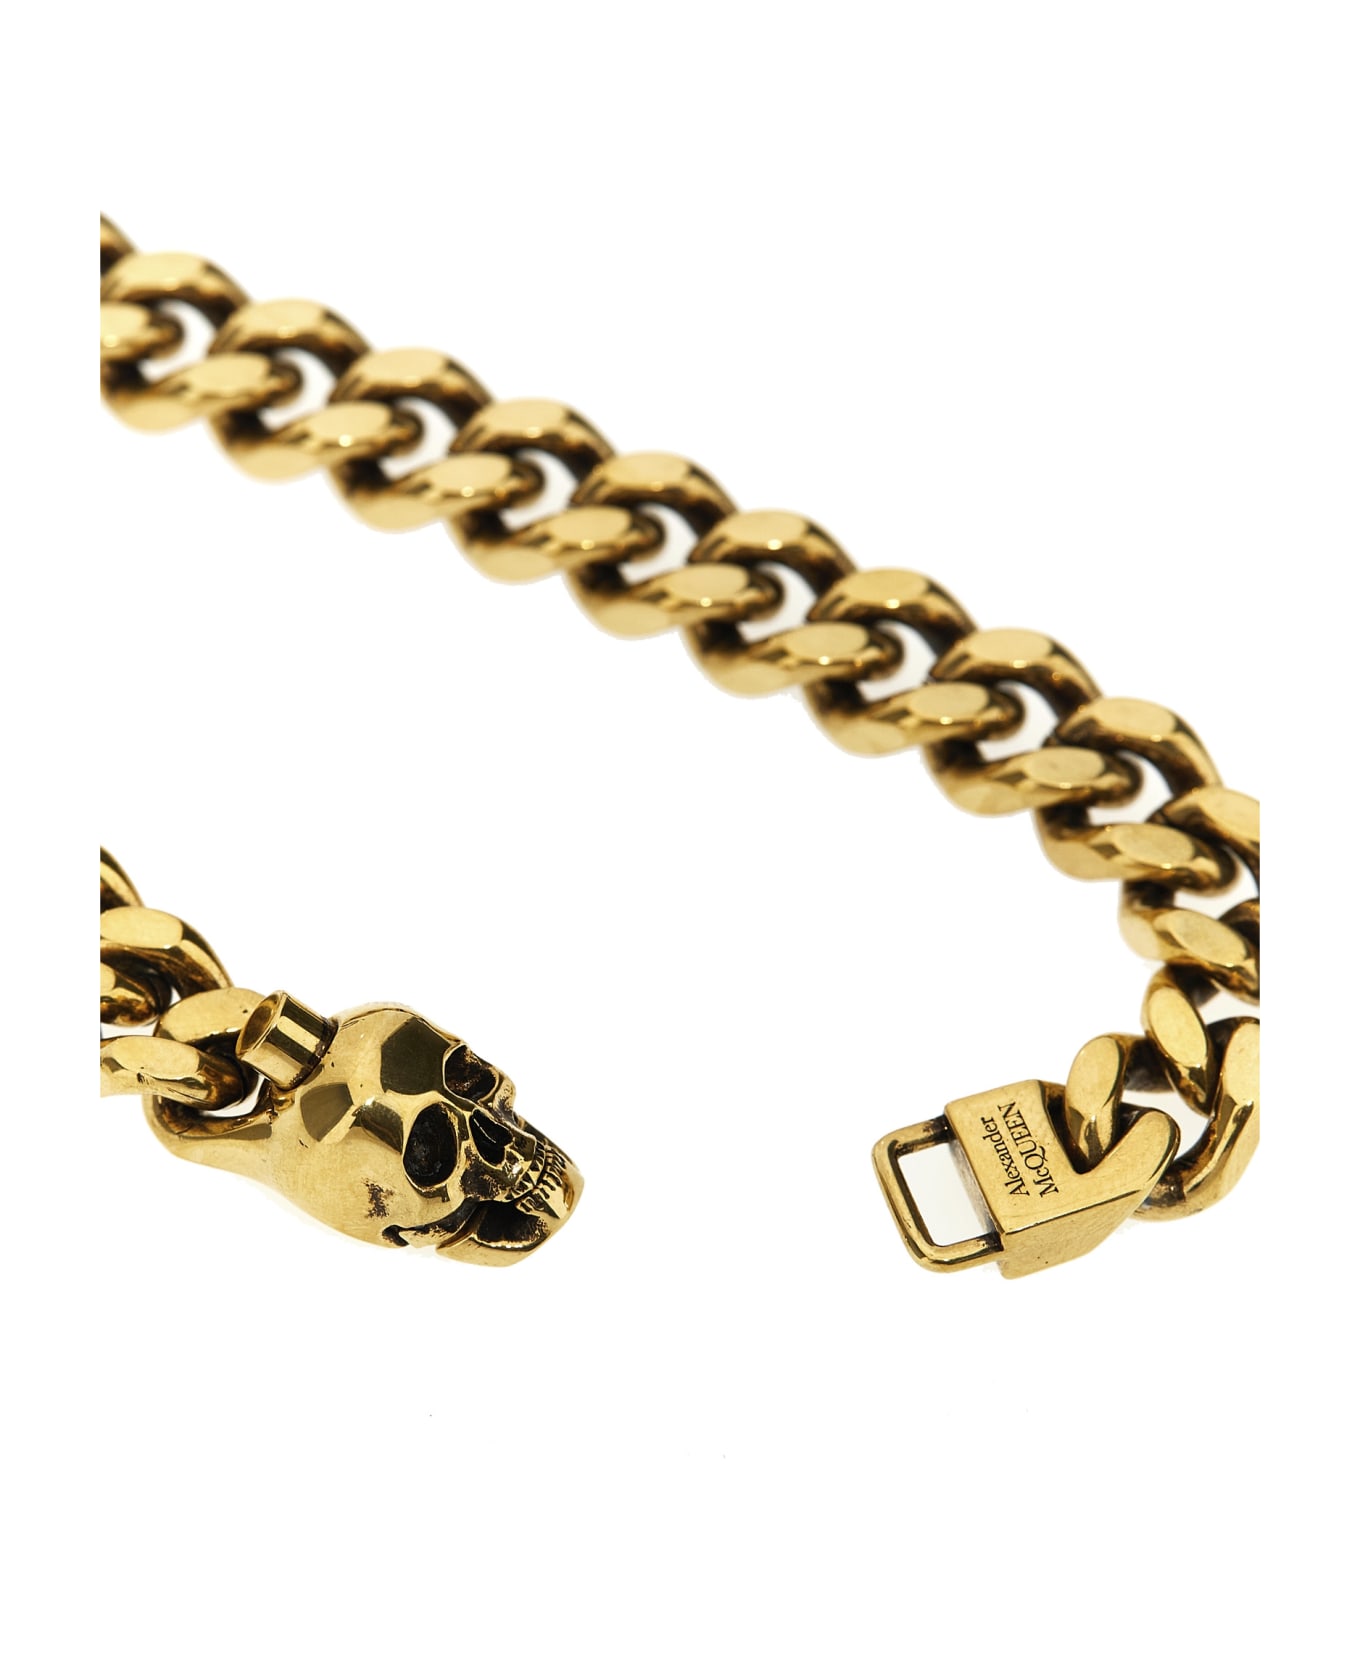 Alexander McQueen Skull Chain Bracelet - Oro